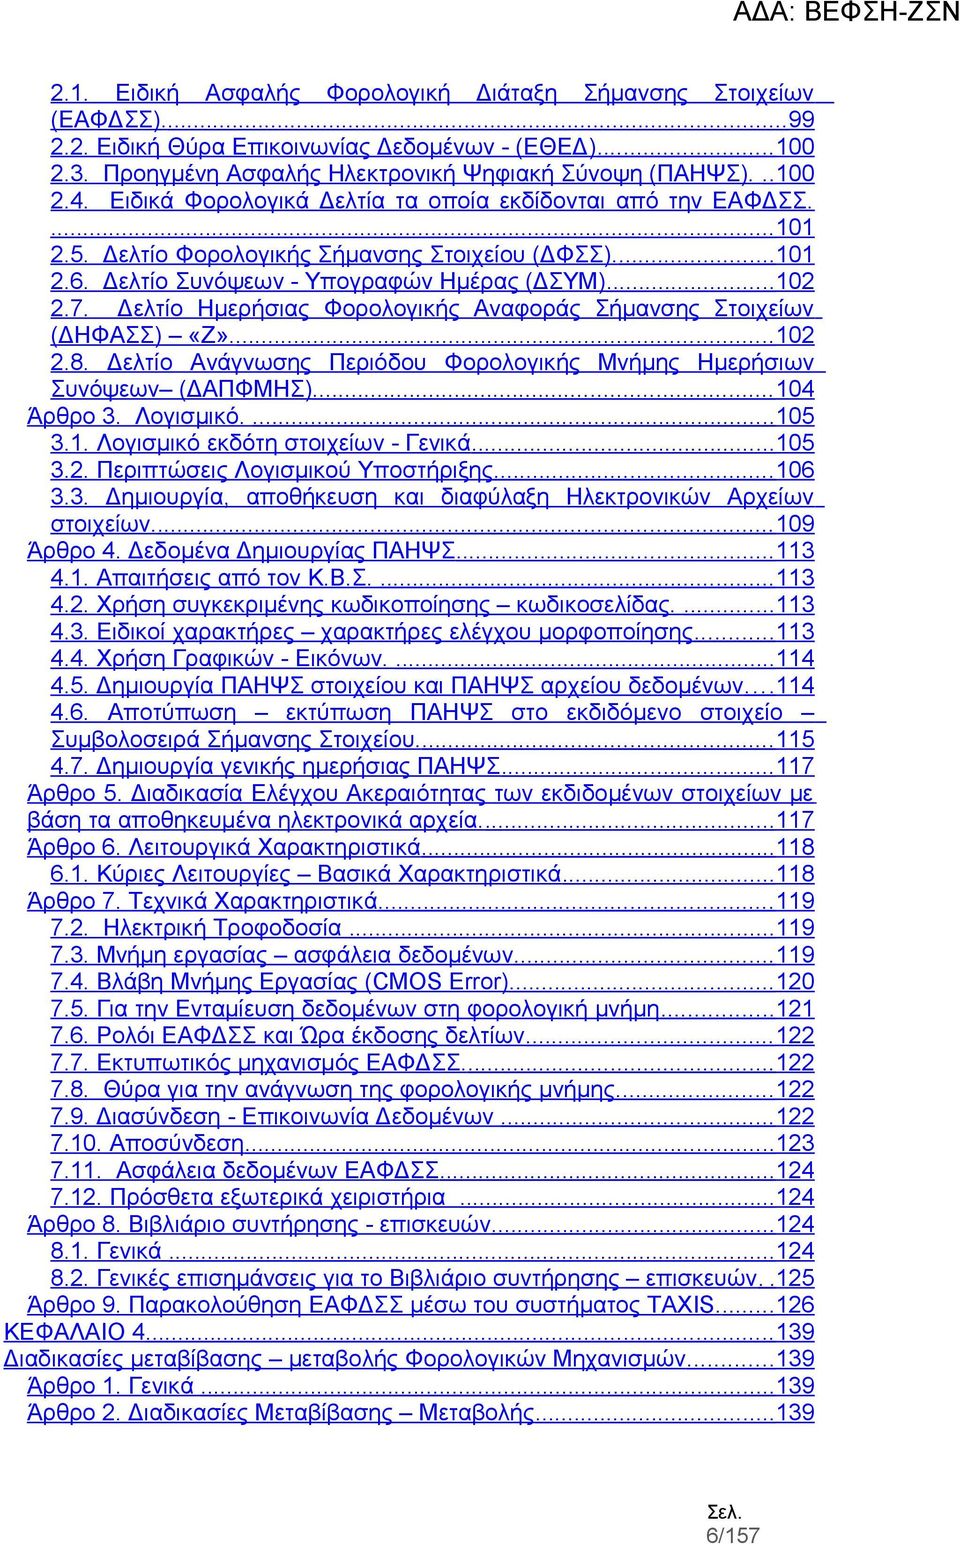 Δελτίο Ημερήσιας Φορολογικής Αναφοράς Σήμανσης Στοιχείων (ΔΗΦΑΣΣ) «Ζ».... 102 2.8. Δελτίο Ανάγνωσης Περιόδου Φορολογικής Μνήμης Ημερήσιων Συνόψεων (ΔΑΠΦΜΗΣ)... 104 Άρθρο 3. Λογισμικό....105 3.1. Λογισμικό εκδότη στοιχείων - Γενικά.